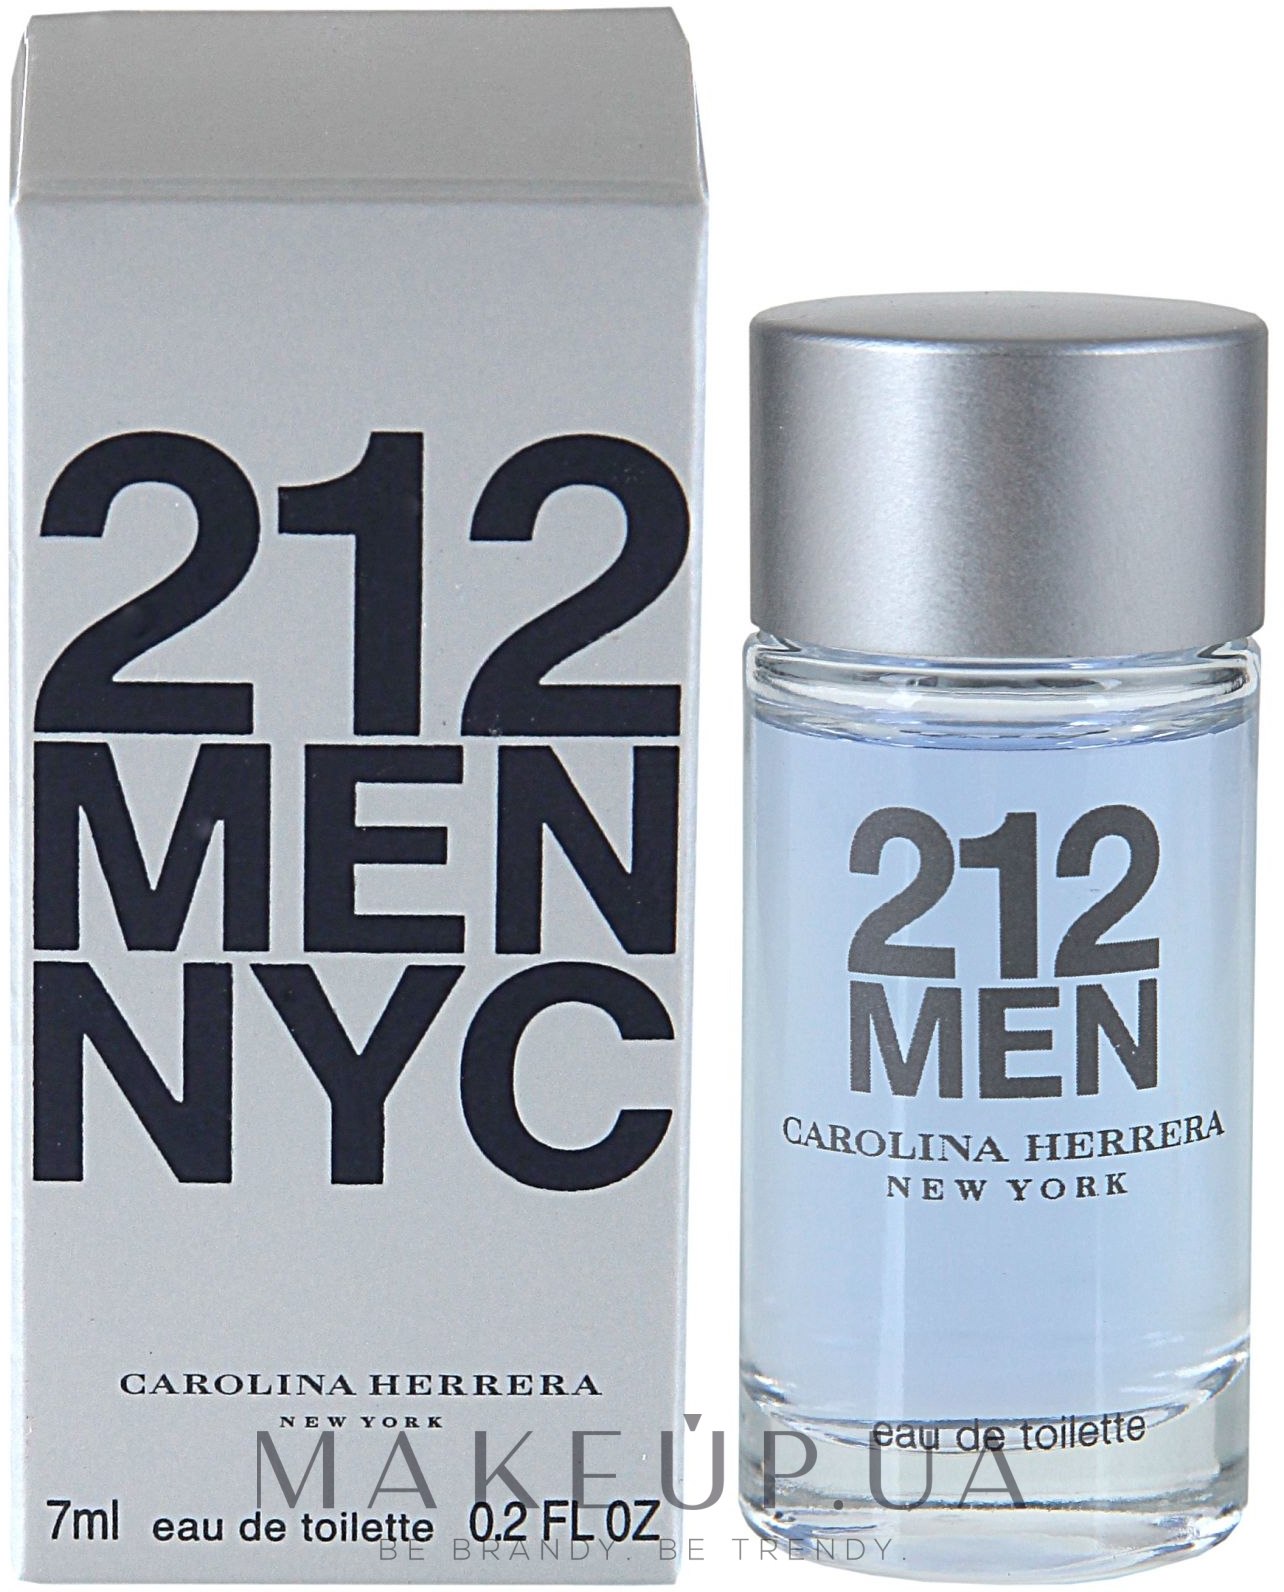 212 new york men